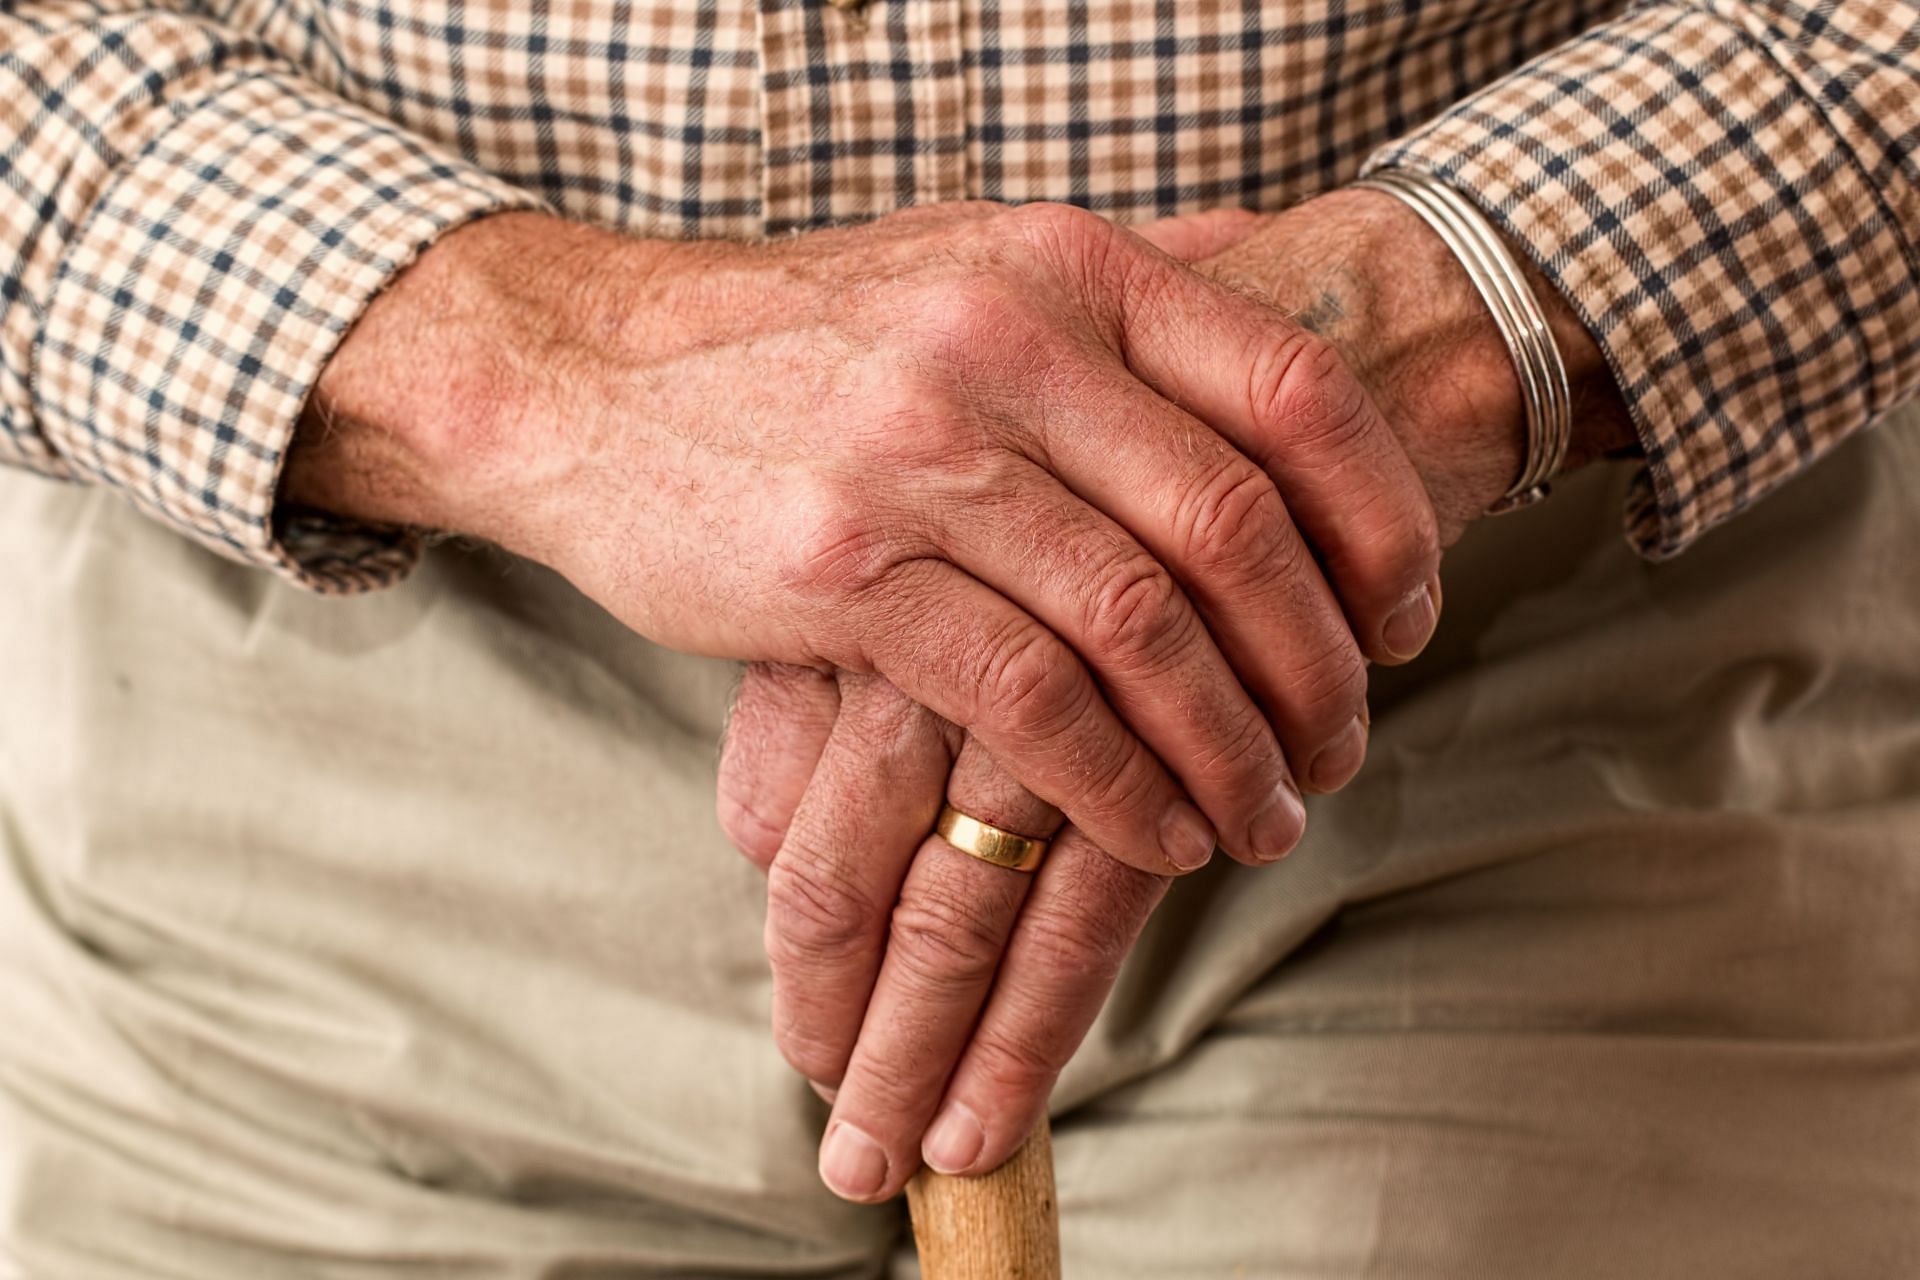 OA is more prevalent in older adults. (Image via Pexels/ Pixabay)